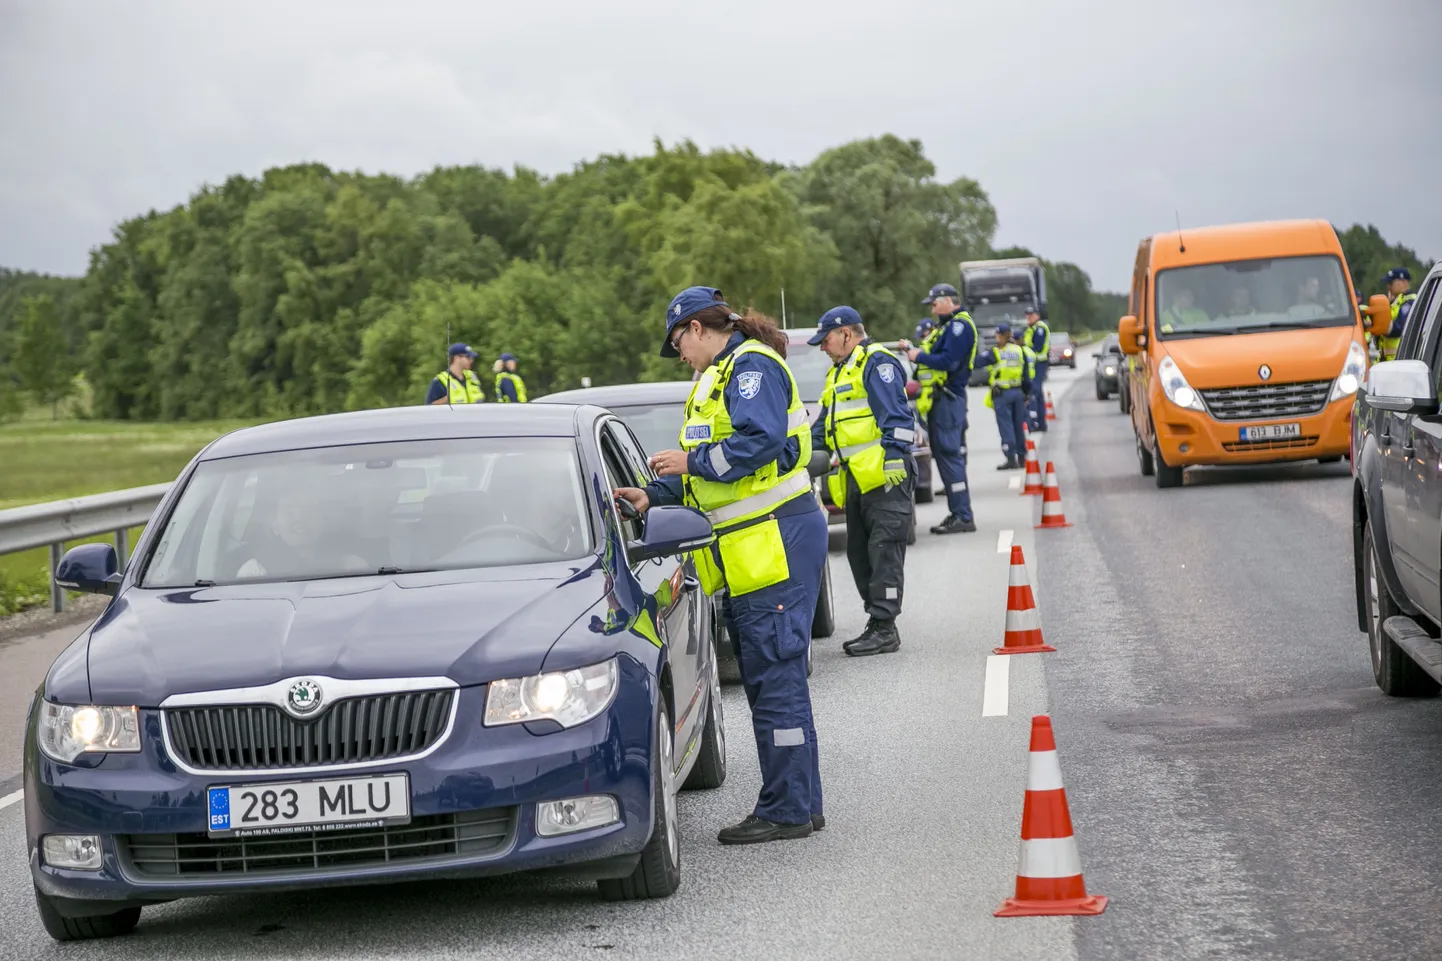 Politsei kontrollis täna hommikul Harjumaal Tallinna-Tartu maanteel Aavikus juhtide kainust. Tunni ajaga tabati kaks joobetunnustega juhti, neist üks veoki ja teine kaubiku roolist.